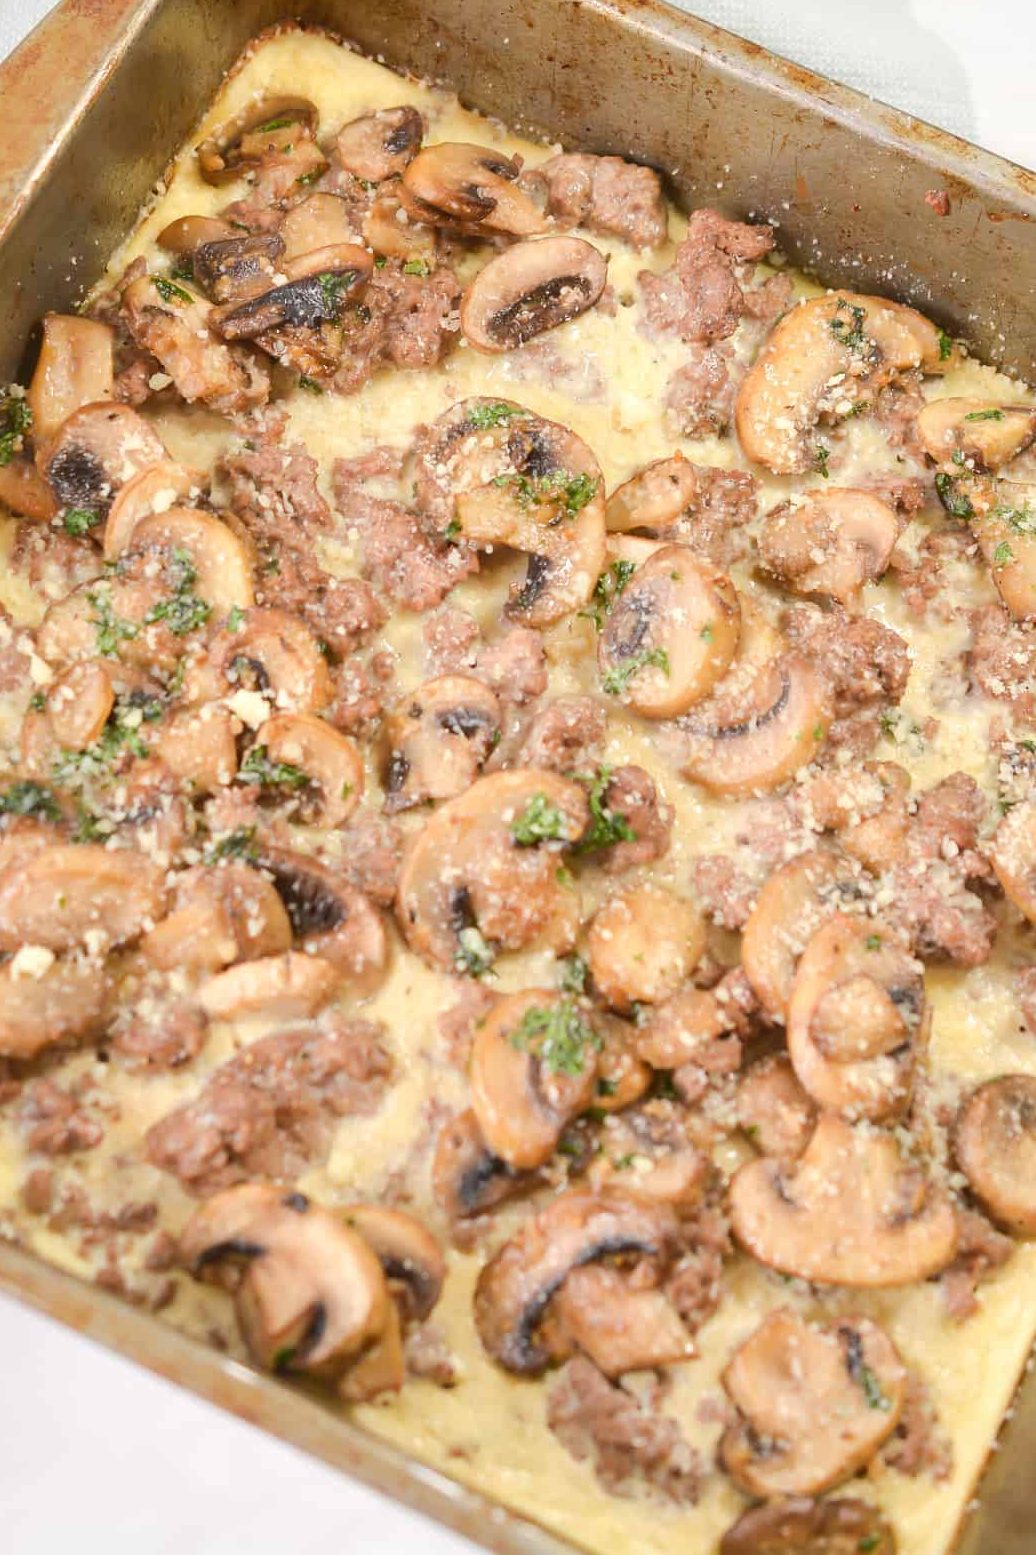 mushroom bake recipe, ground beef mushroom casserole, Hamburger Mushroom Bake